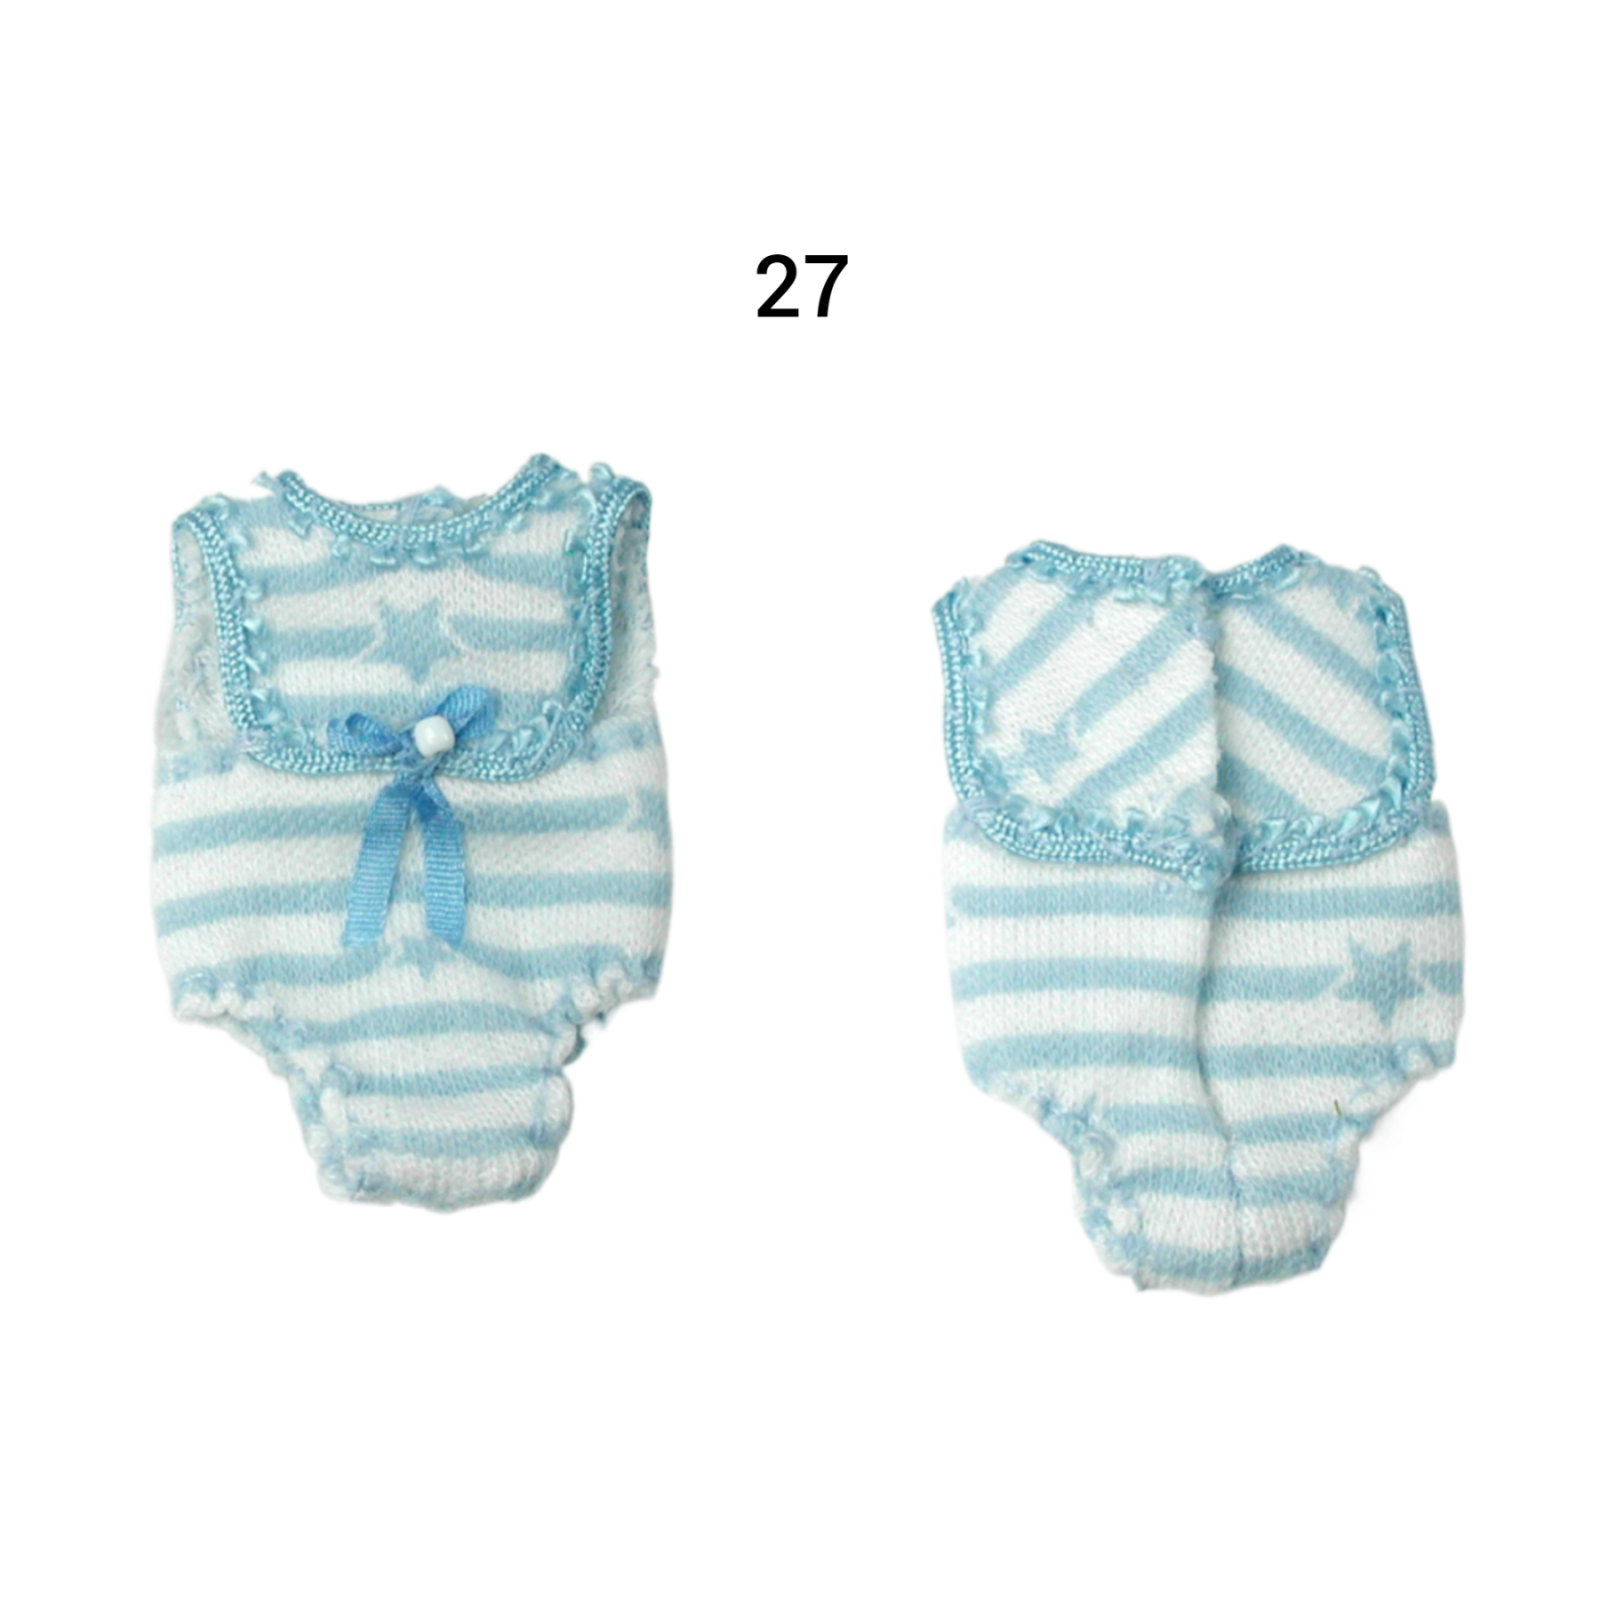 Pumphose Spielhose für das Baby Kleidung Maßstab 1:12 4